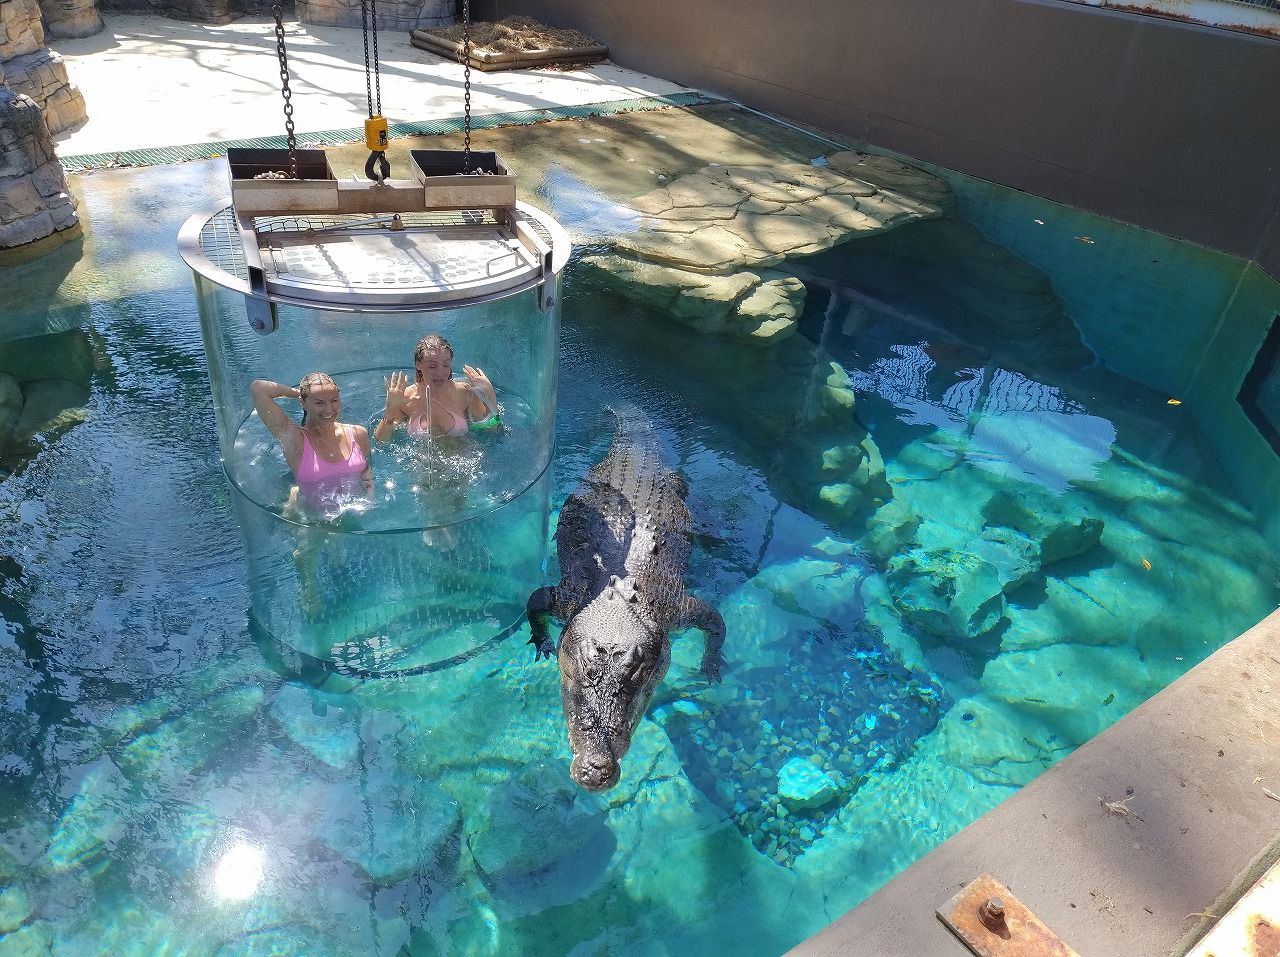 画像 | 巨大ワニの水槽に潜入､スリル満点｢死の檻｣体験 ダーウィンのワニ・爬虫類動物園はすごかった | 旅行 | 東洋経済オンライン